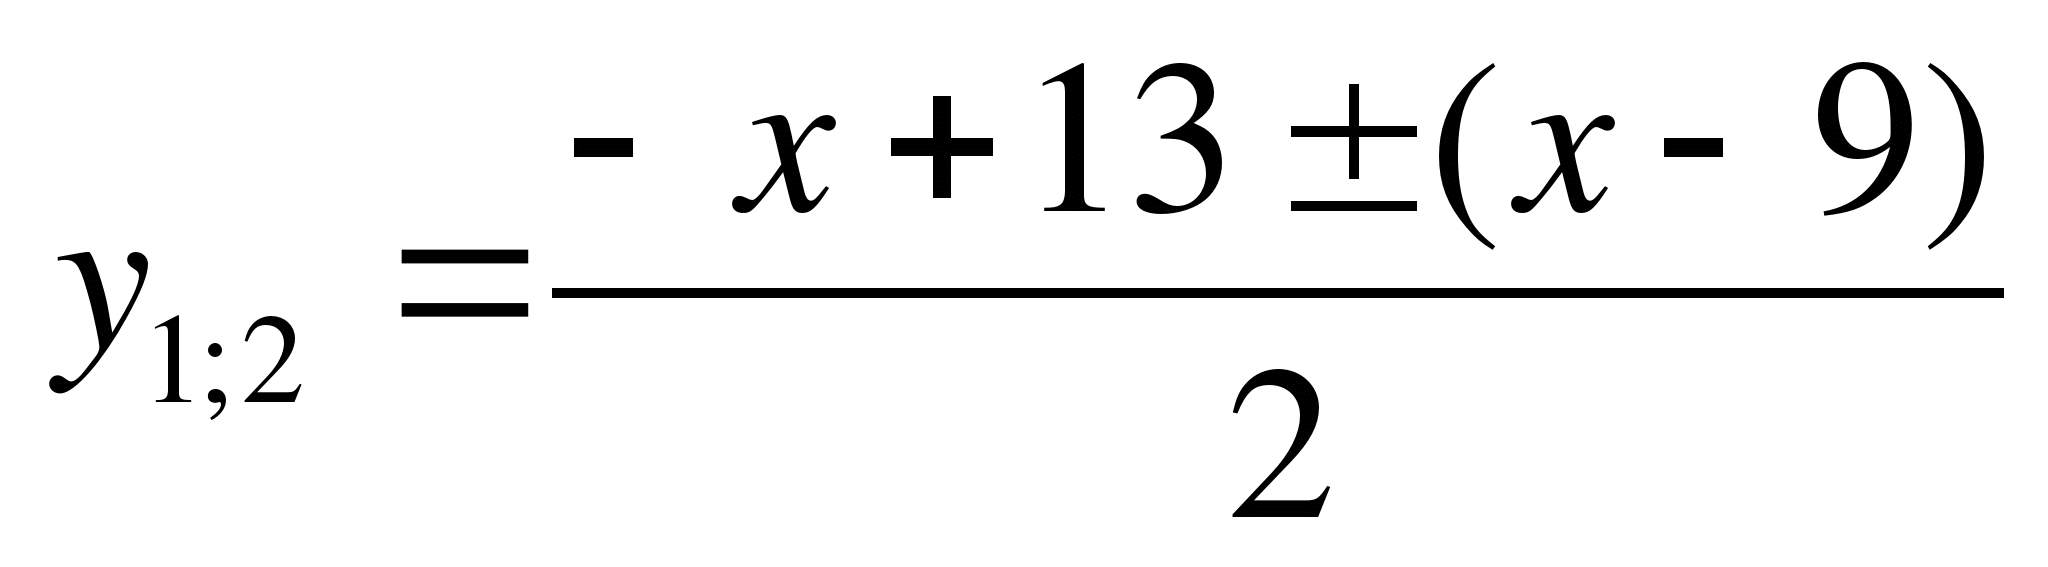 Конспект урока алгебры в 11 классе по теме Решение нестандартных показательных уравнений